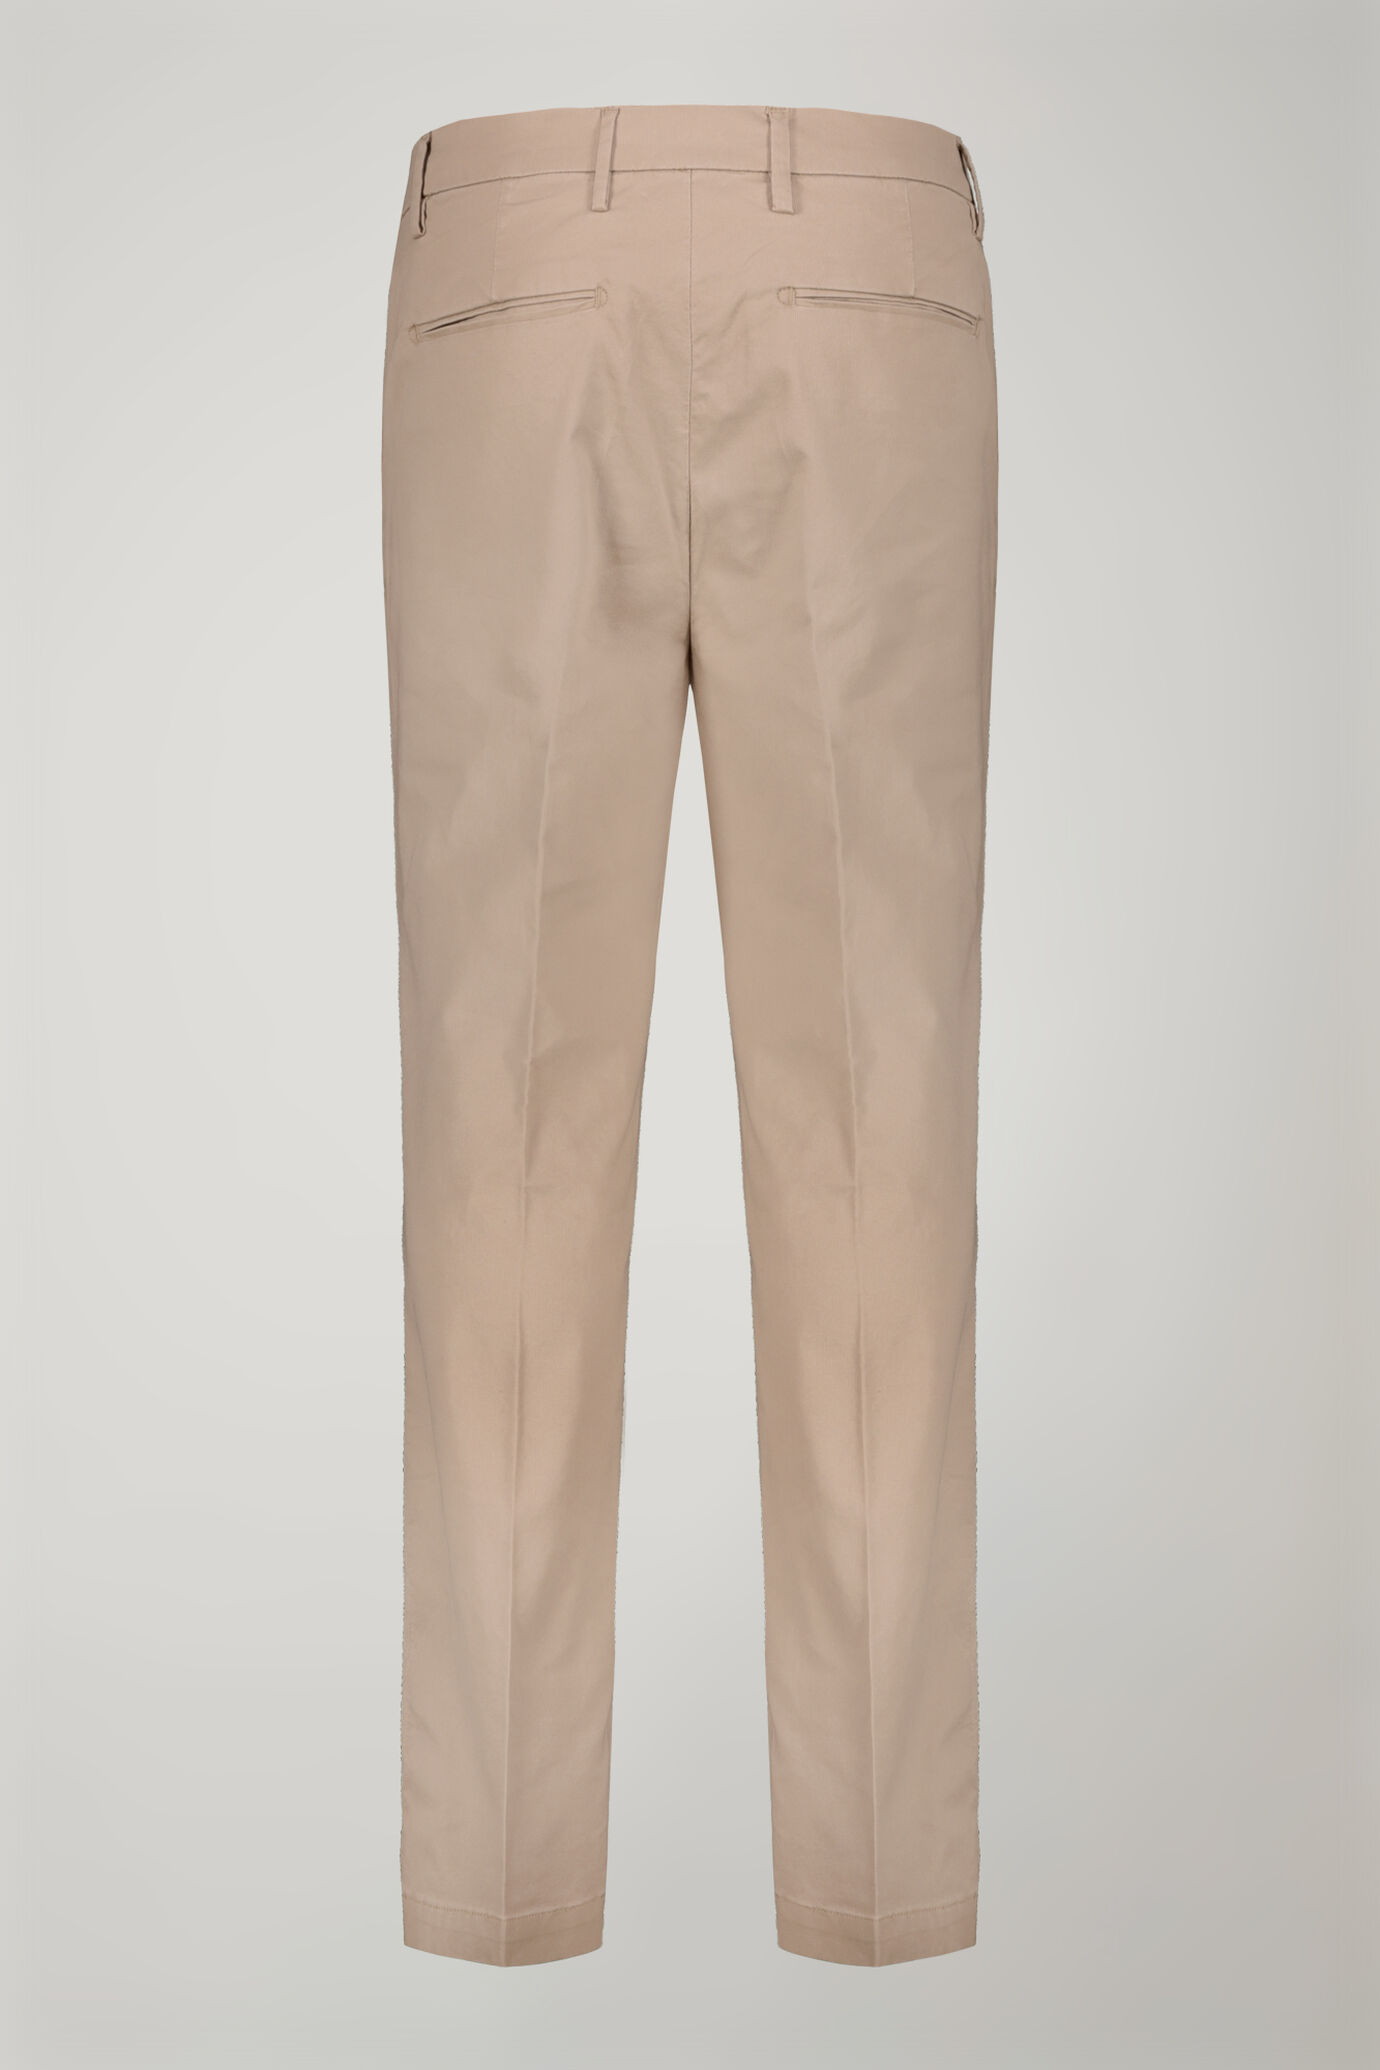 Pantalone uomo classico tessuto in cotone bacchettato tinto in capo regular fit image number 5